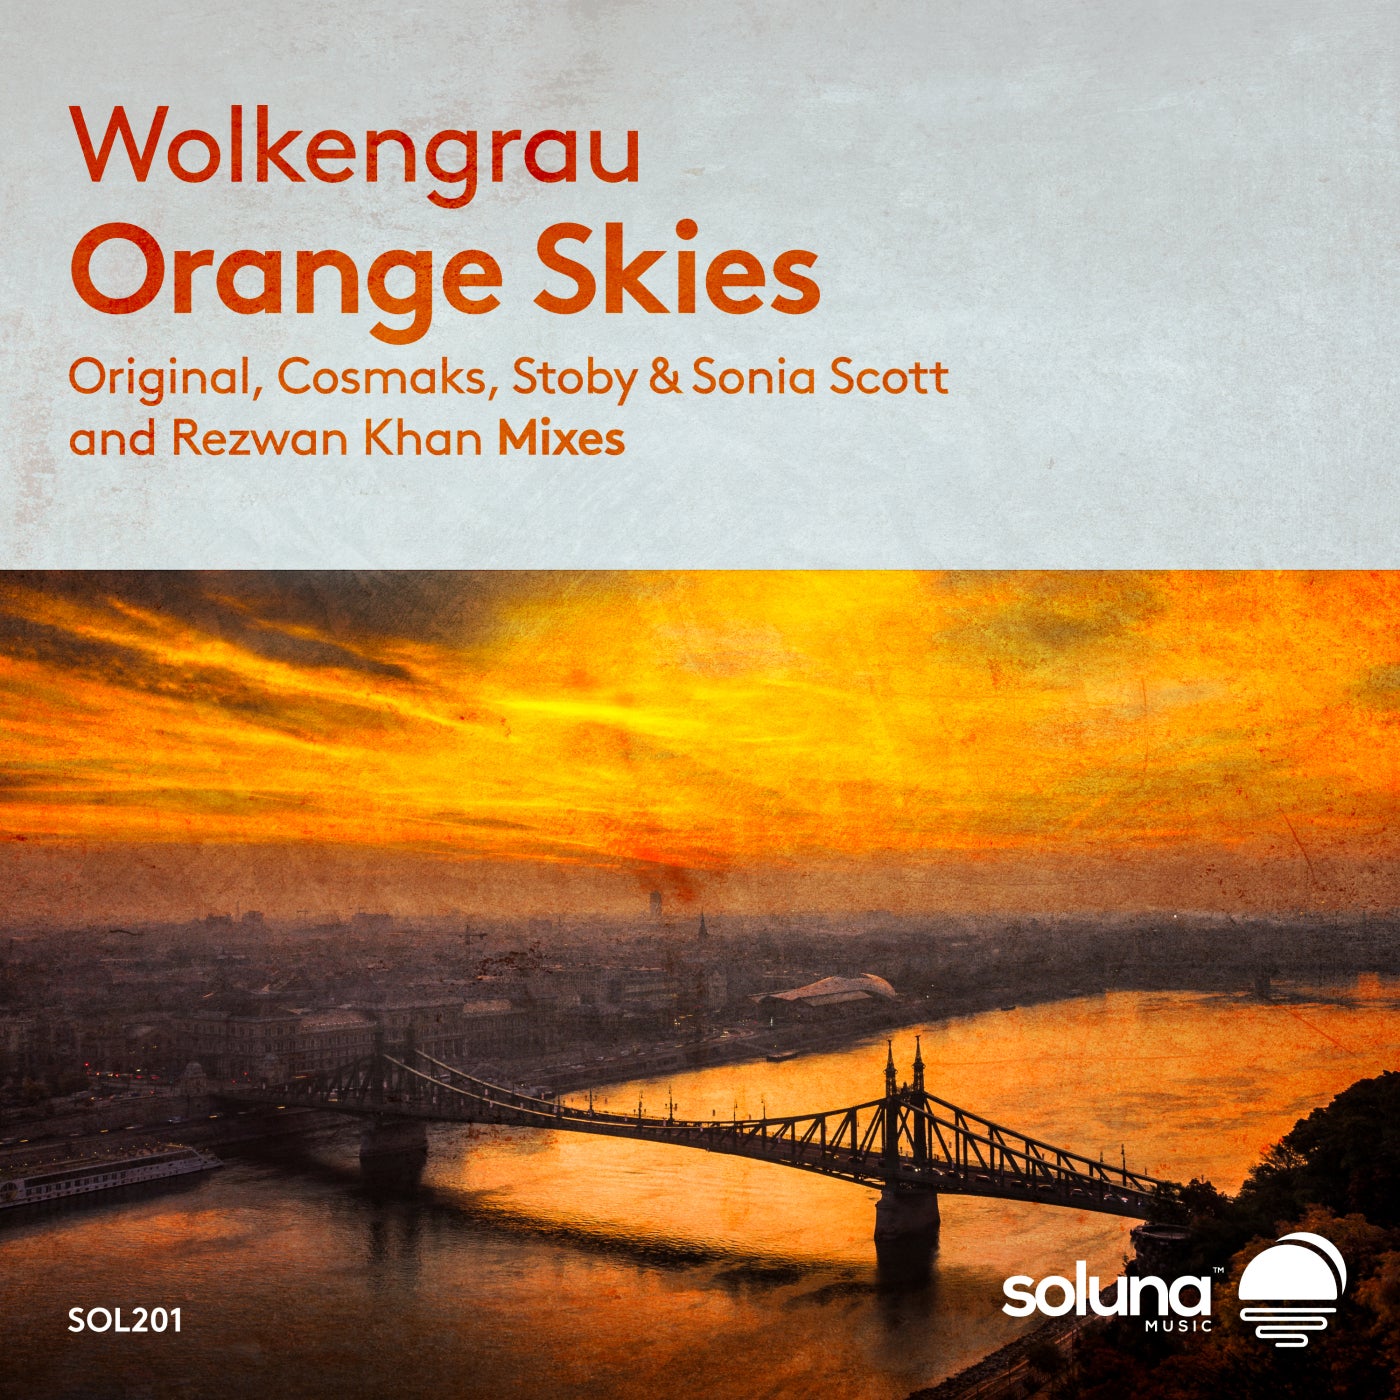 Wolkengrau - Orange Skies [SOL201]